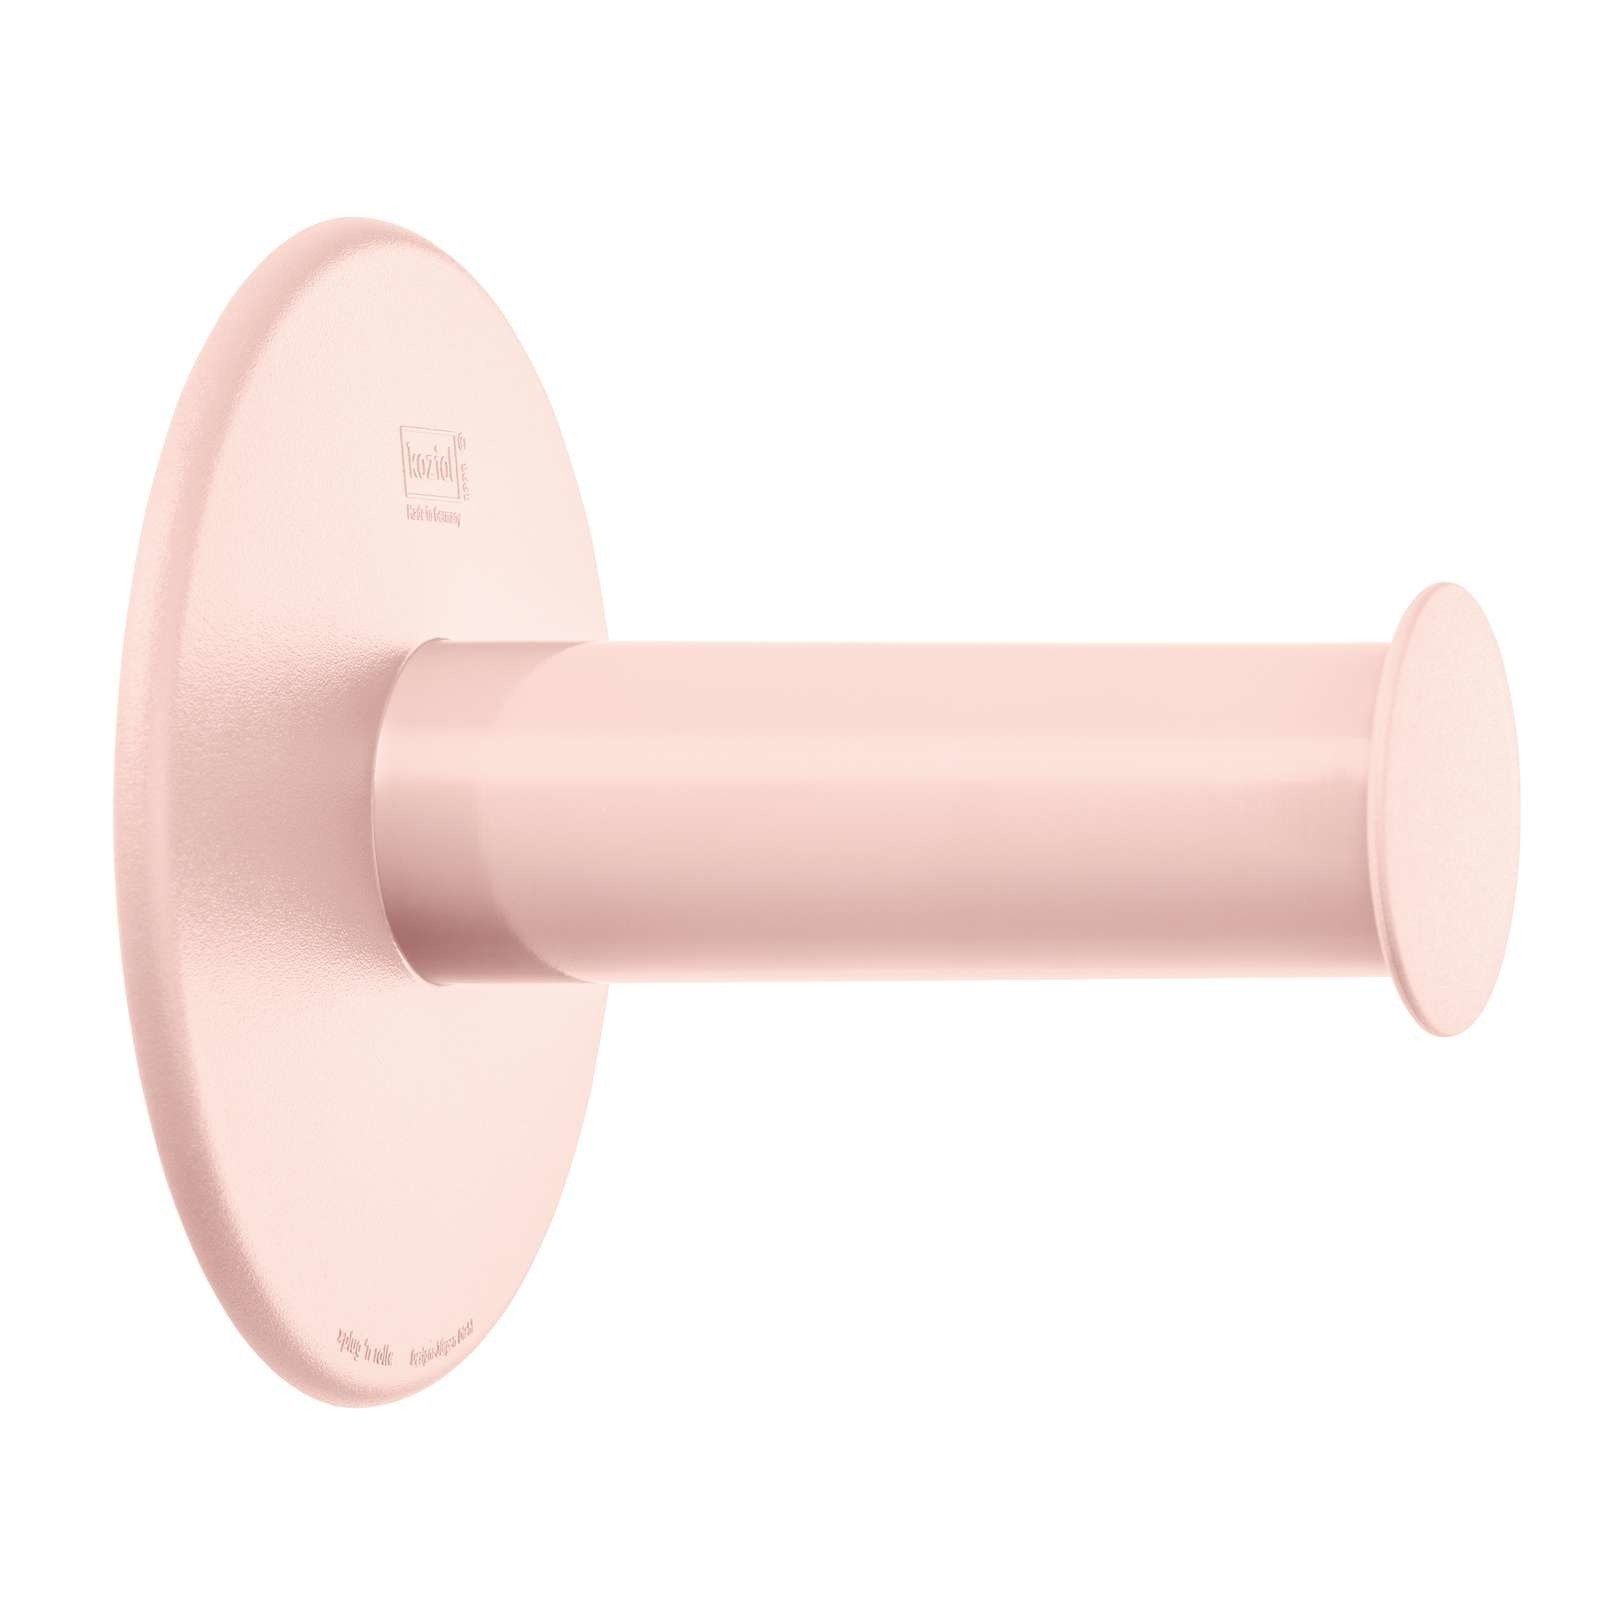 Držák toaletního papíru PLUG\'N ROLL - barva růžová, KOZIOL - EMAKO.CZ s.r.o.